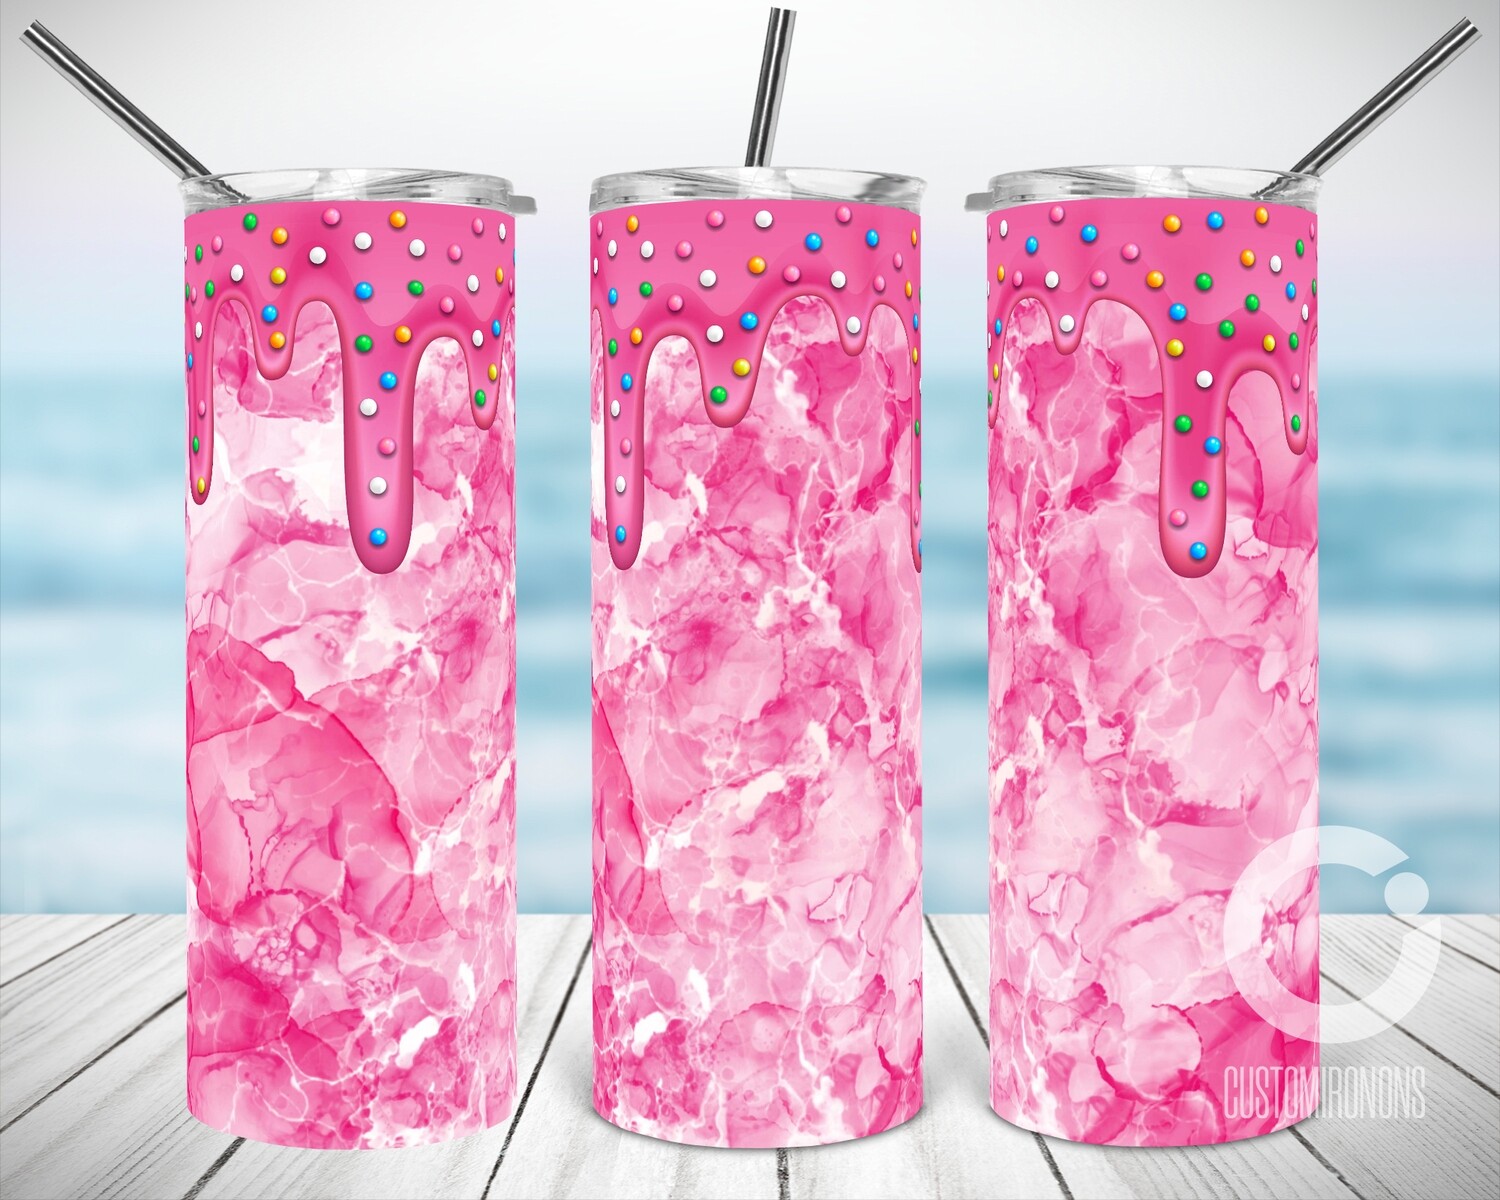 Pink Milkshake- Sublimation design - Sublimation - DTG printing - Sublimation design download - Summer sublimation design